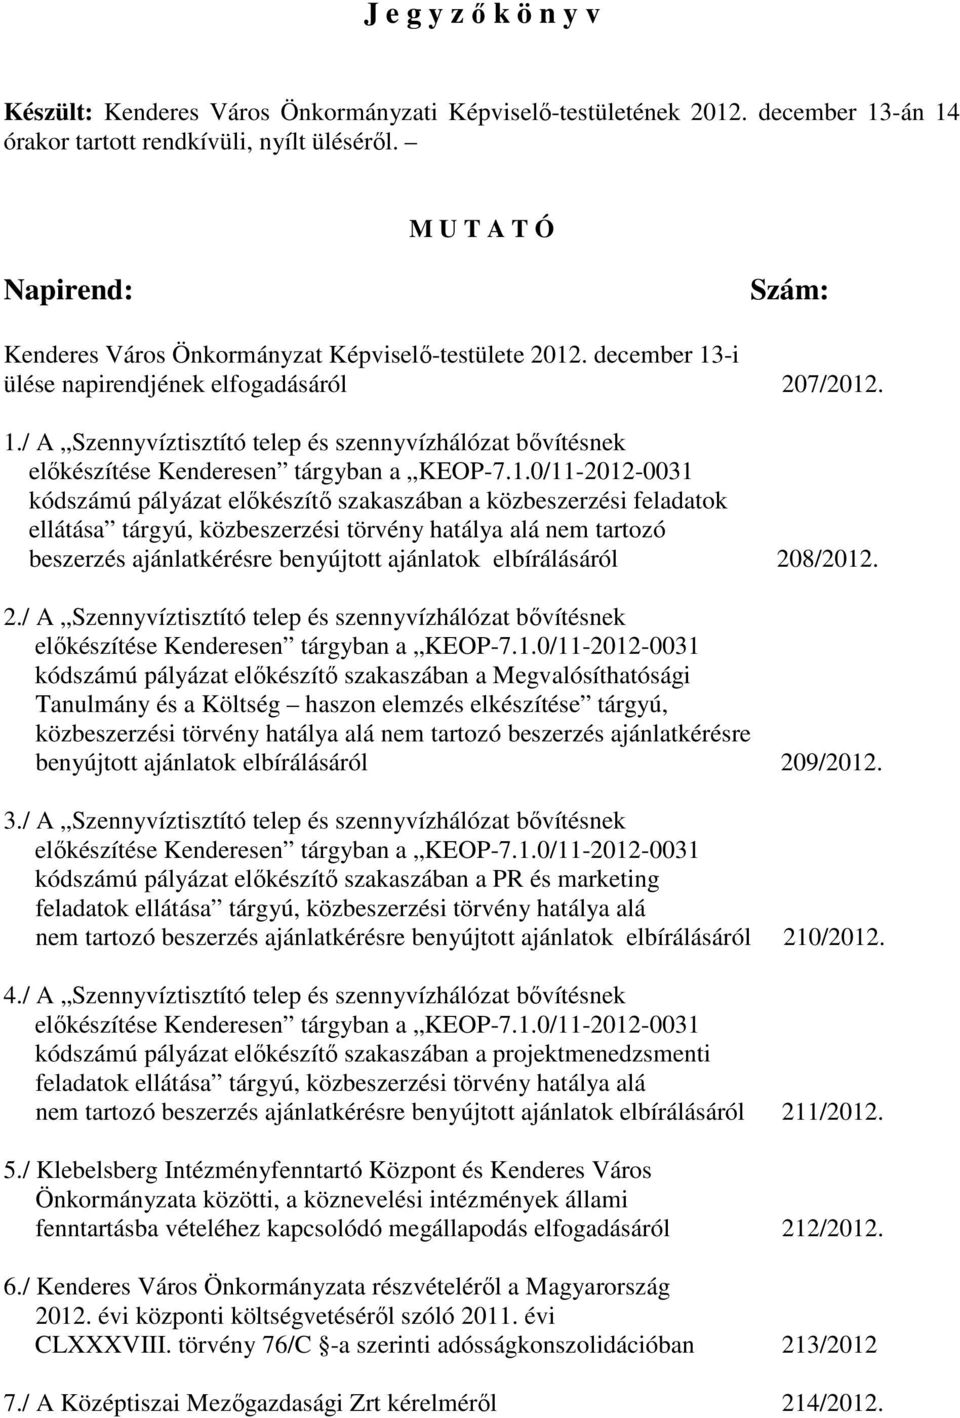 1.0/11-2012-0031 kódszámú pályázat elıkészítı szakaszában a közbeszerzési feladatok ellátása tárgyú, közbeszerzési törvény hatálya alá nem tartozó beszerzés ajánlatkérésre benyújtott ajánlatok